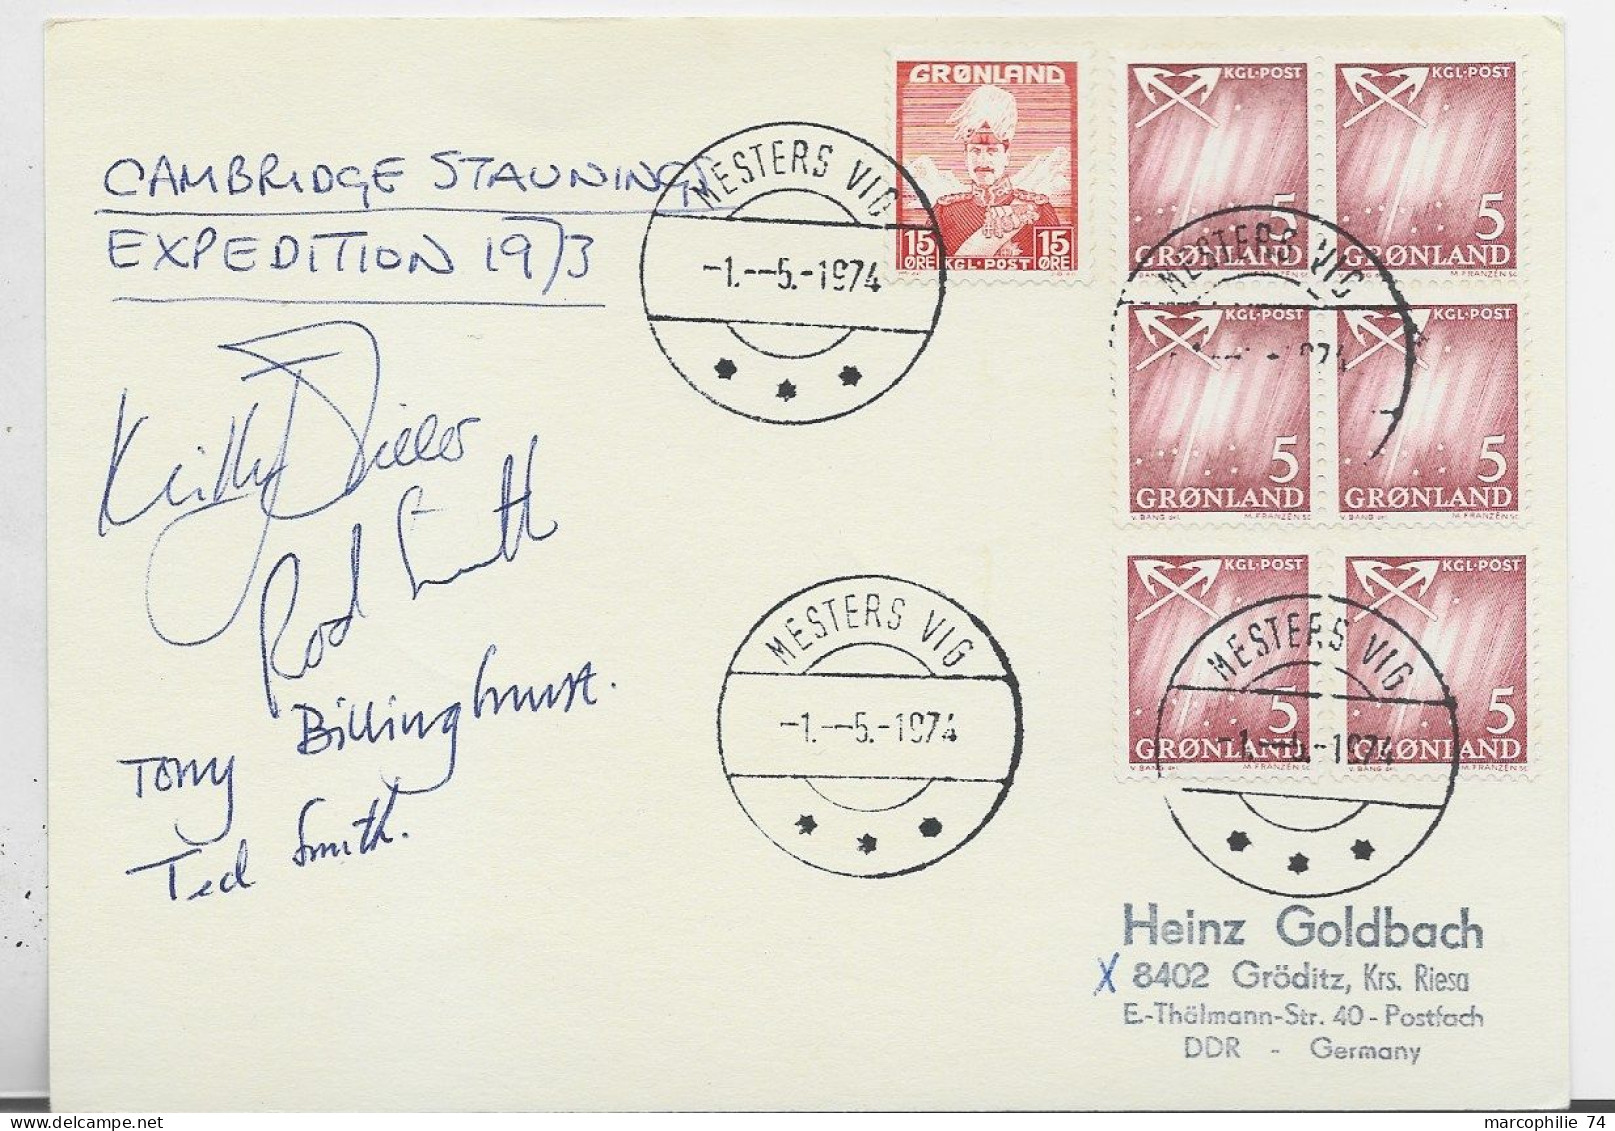 GRONLAND POST CARD MESTERS VIG 1.5.1974 CAMBRIGDE EXPEDITION 1973 + SIGNATURES - Briefe U. Dokumente